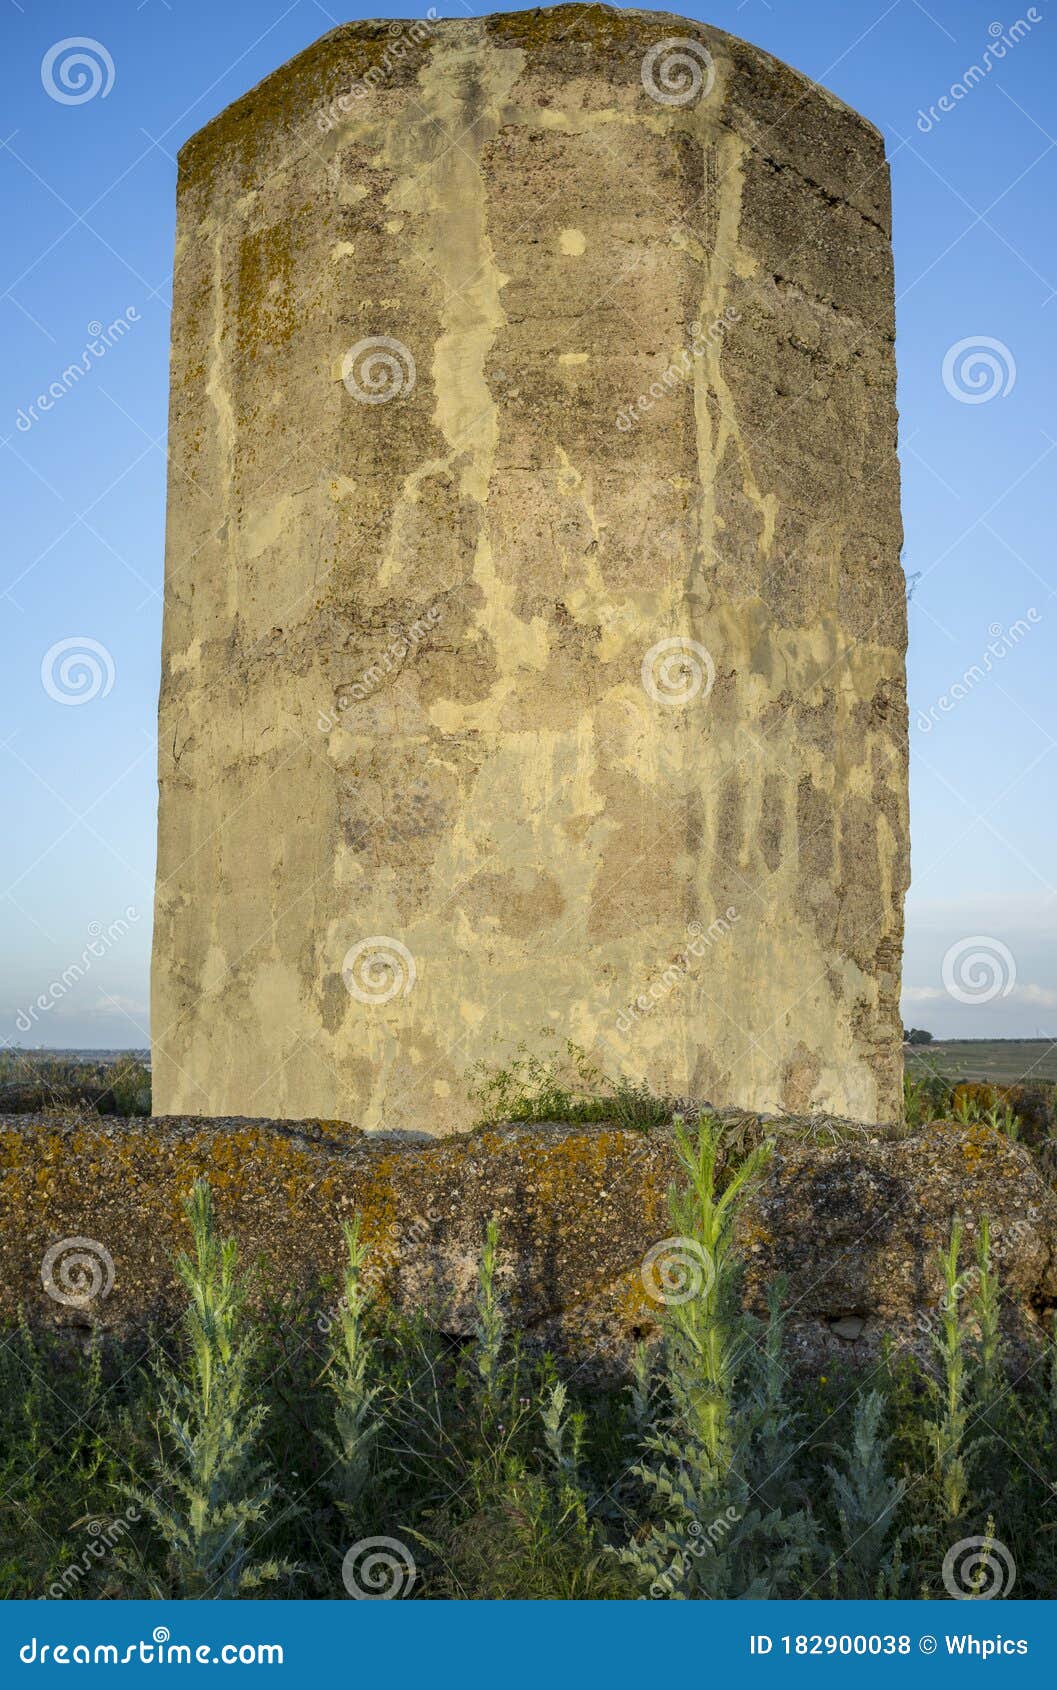 almohad watchtower of ibn marwan or los rostros, badajoz, spain